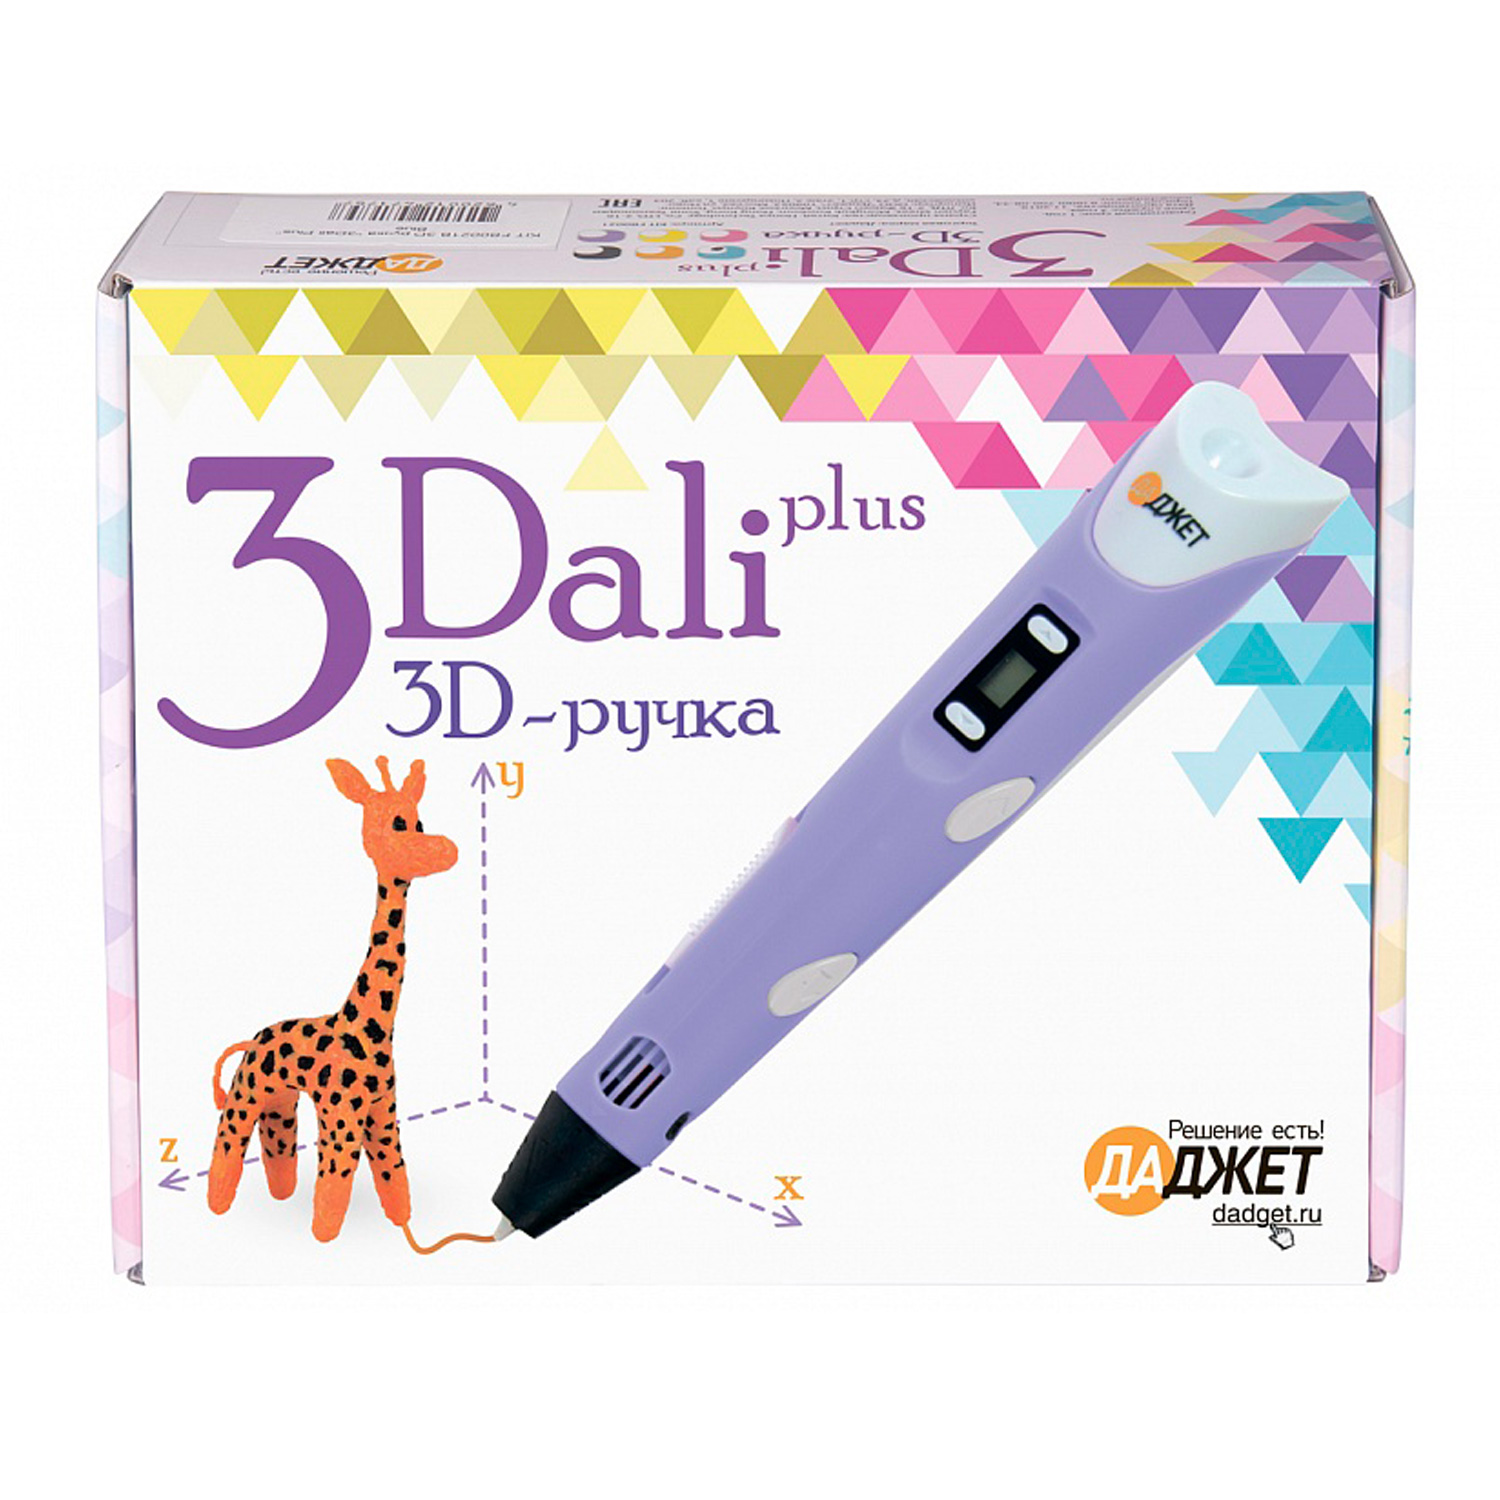 3D ручка Даджет 3Dali Plus Blue - фото 10